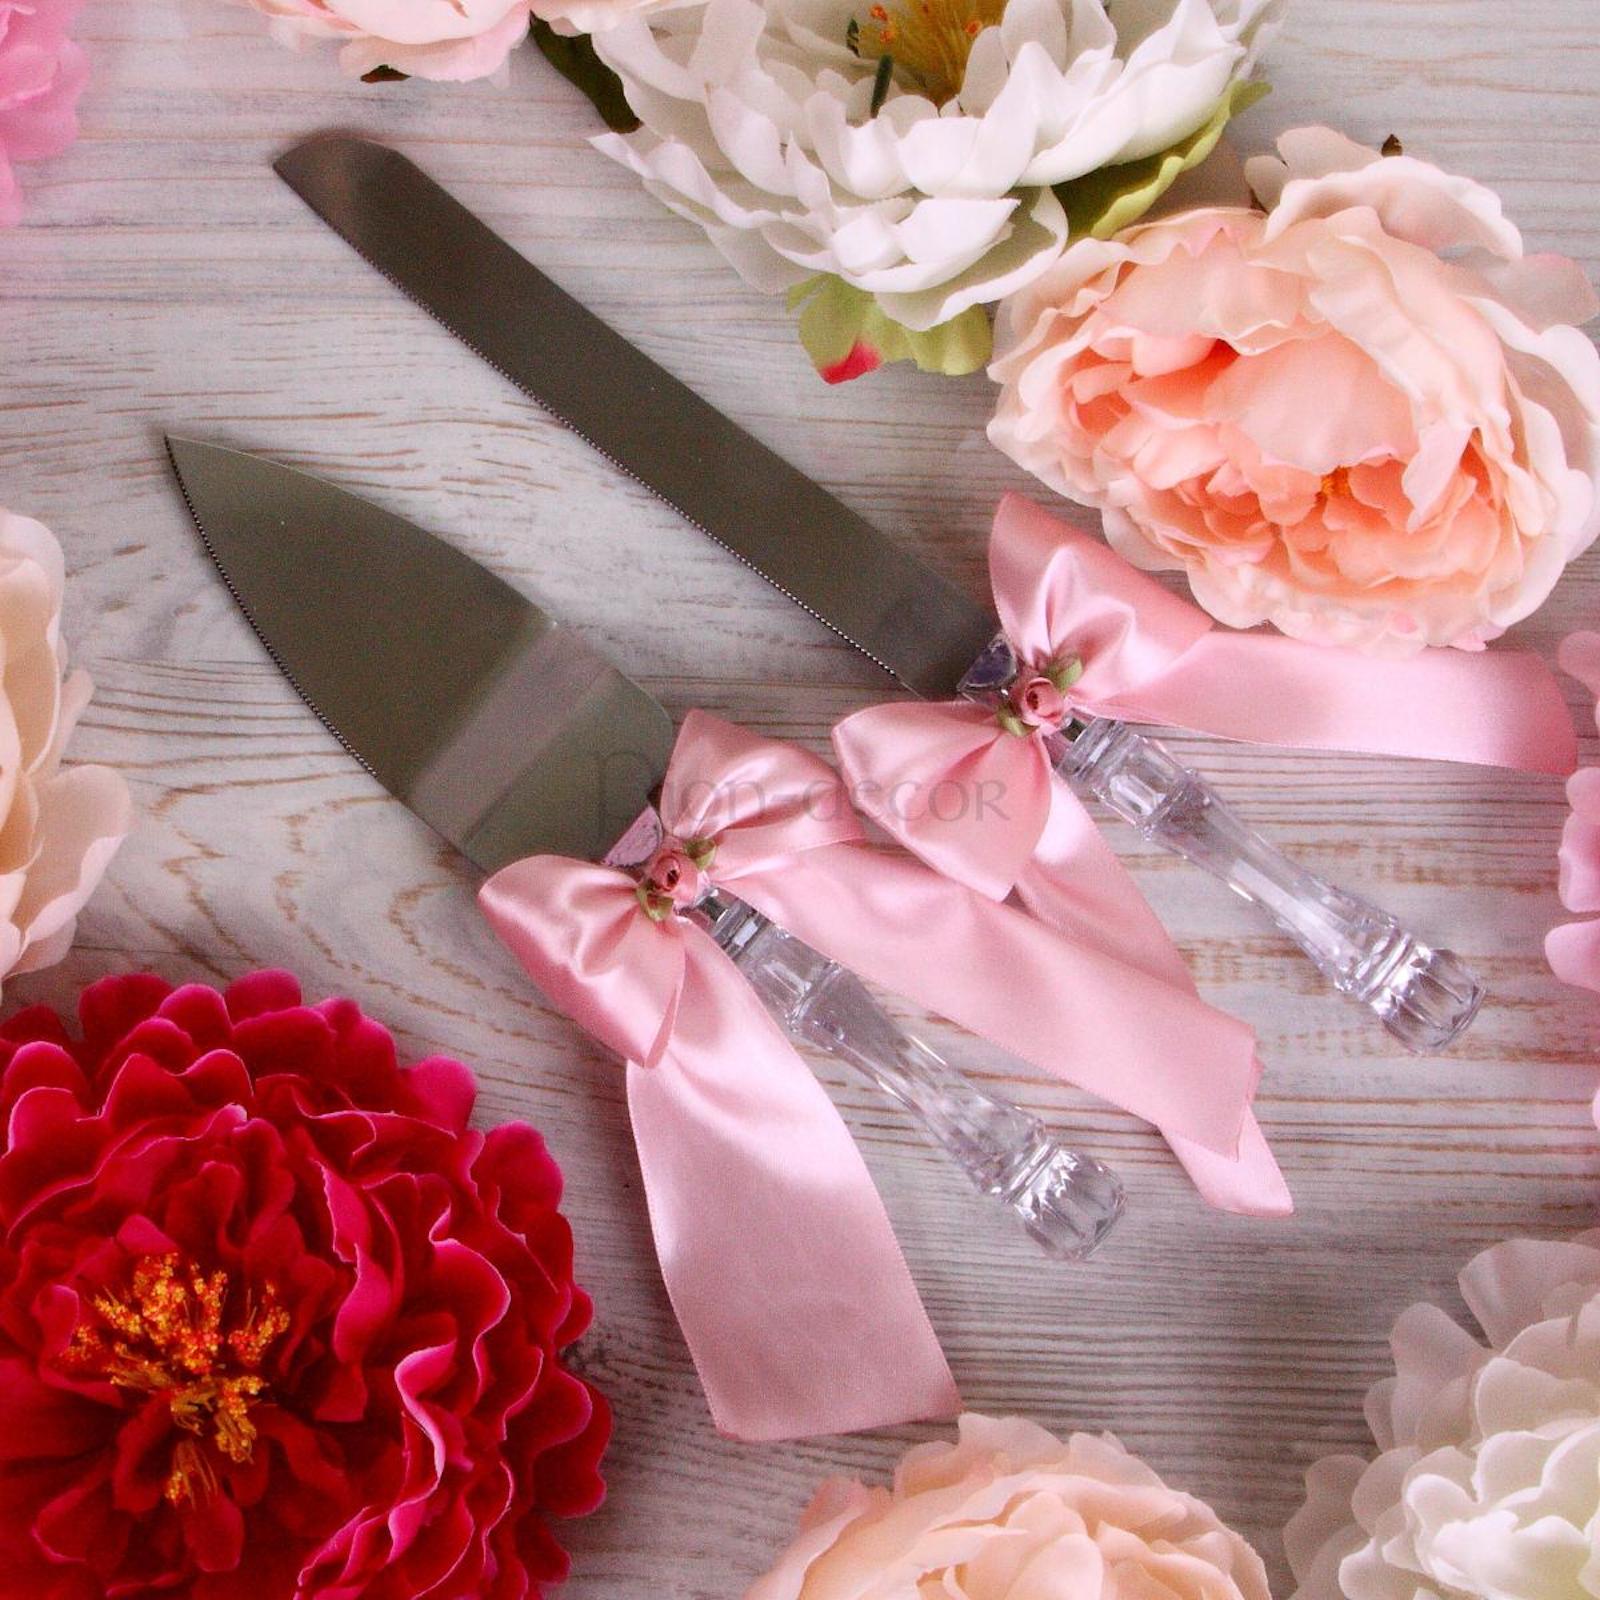 Нож и лопатка для свадебного торта с розовой атласной лентой